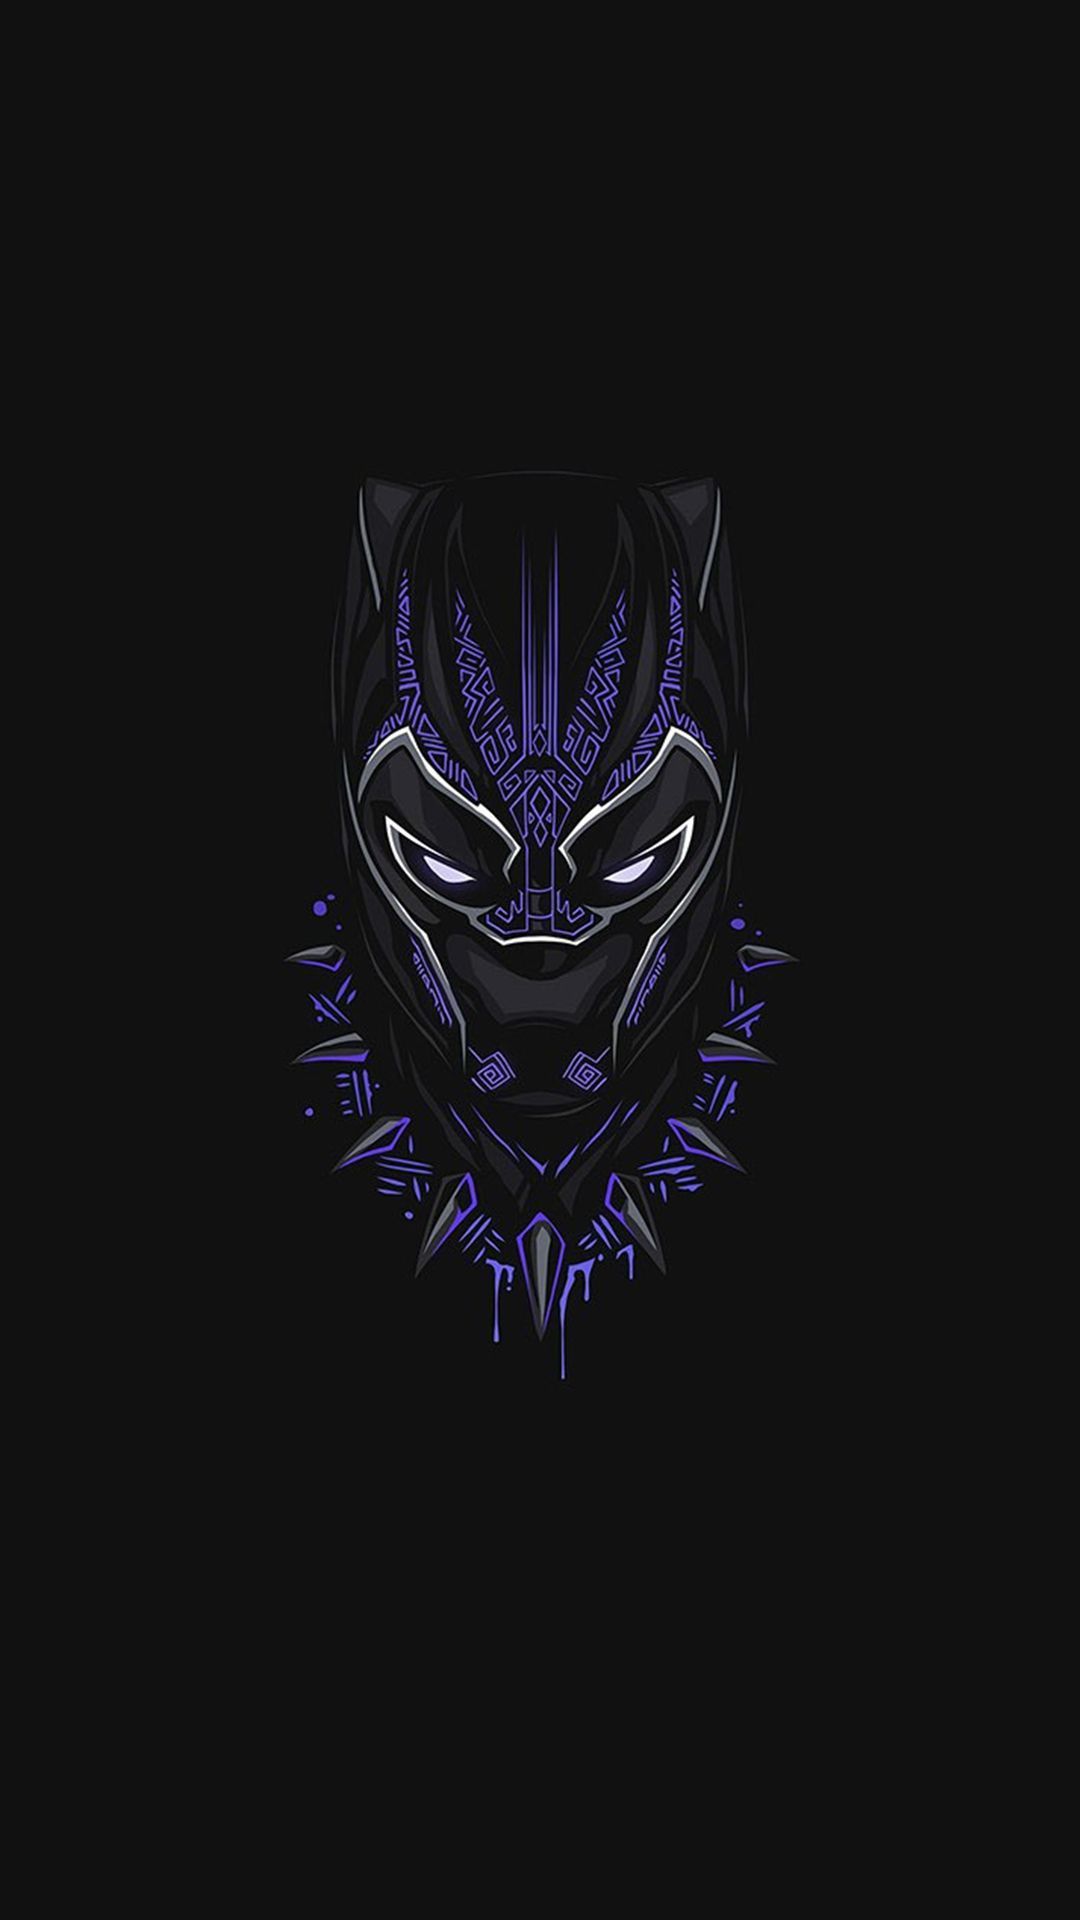 Black Panther Marvel Wallpapers 4k Hd Black Panther Marvel Backgrounds On Wallpaperbat